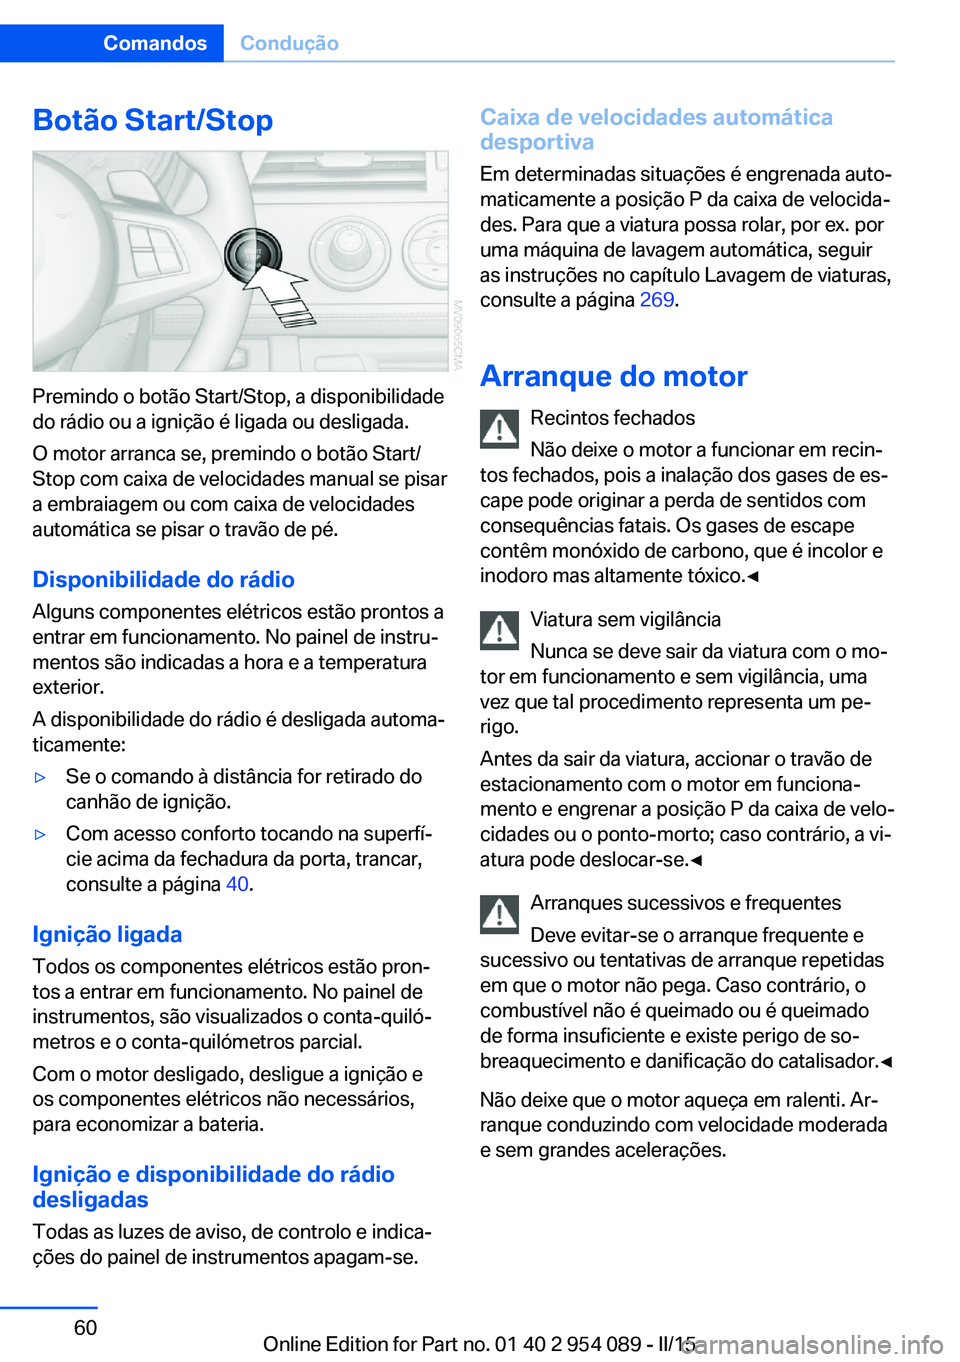 BMW Z4 2016  Manual do condutor (in Portuguese) Botão Start/Stop
Premindo o botão Start/Stop, a disponibilidade
do rádio ou a ignição é ligada ou desligada.
O motor arranca se, premindo o botão Start/
Stop com caixa de velocidades manual se 